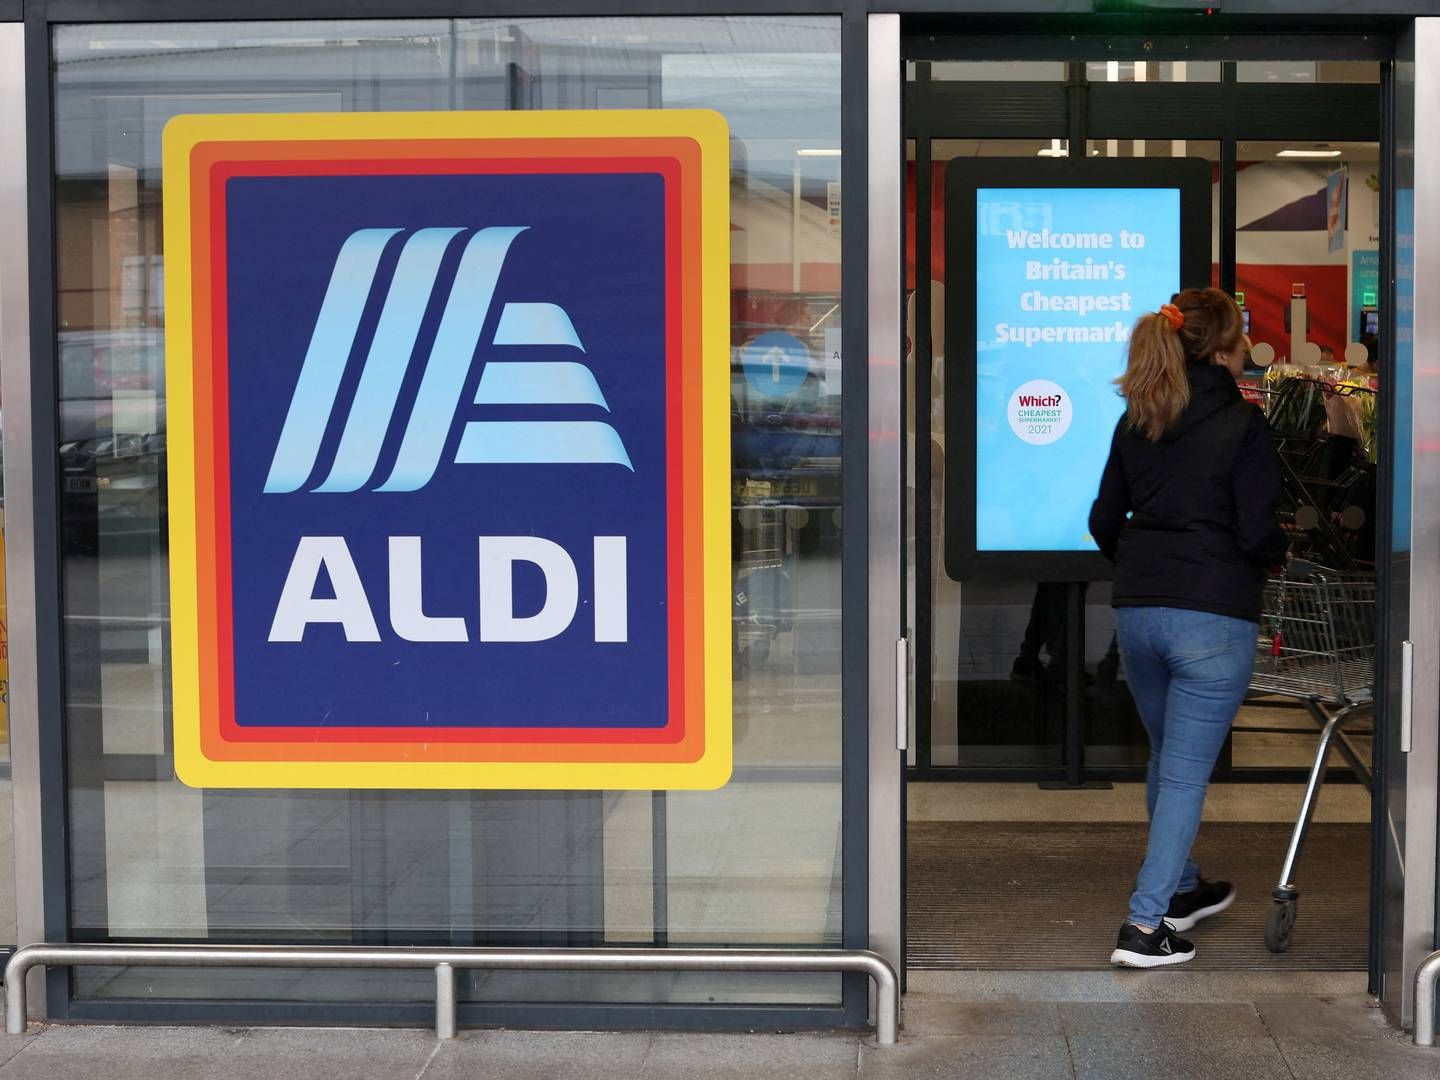 I takt med at antallet af Aldi-butikker i Storbritannien fortsætter med at vokse, fortsætter tilstrømningen af kunder også.